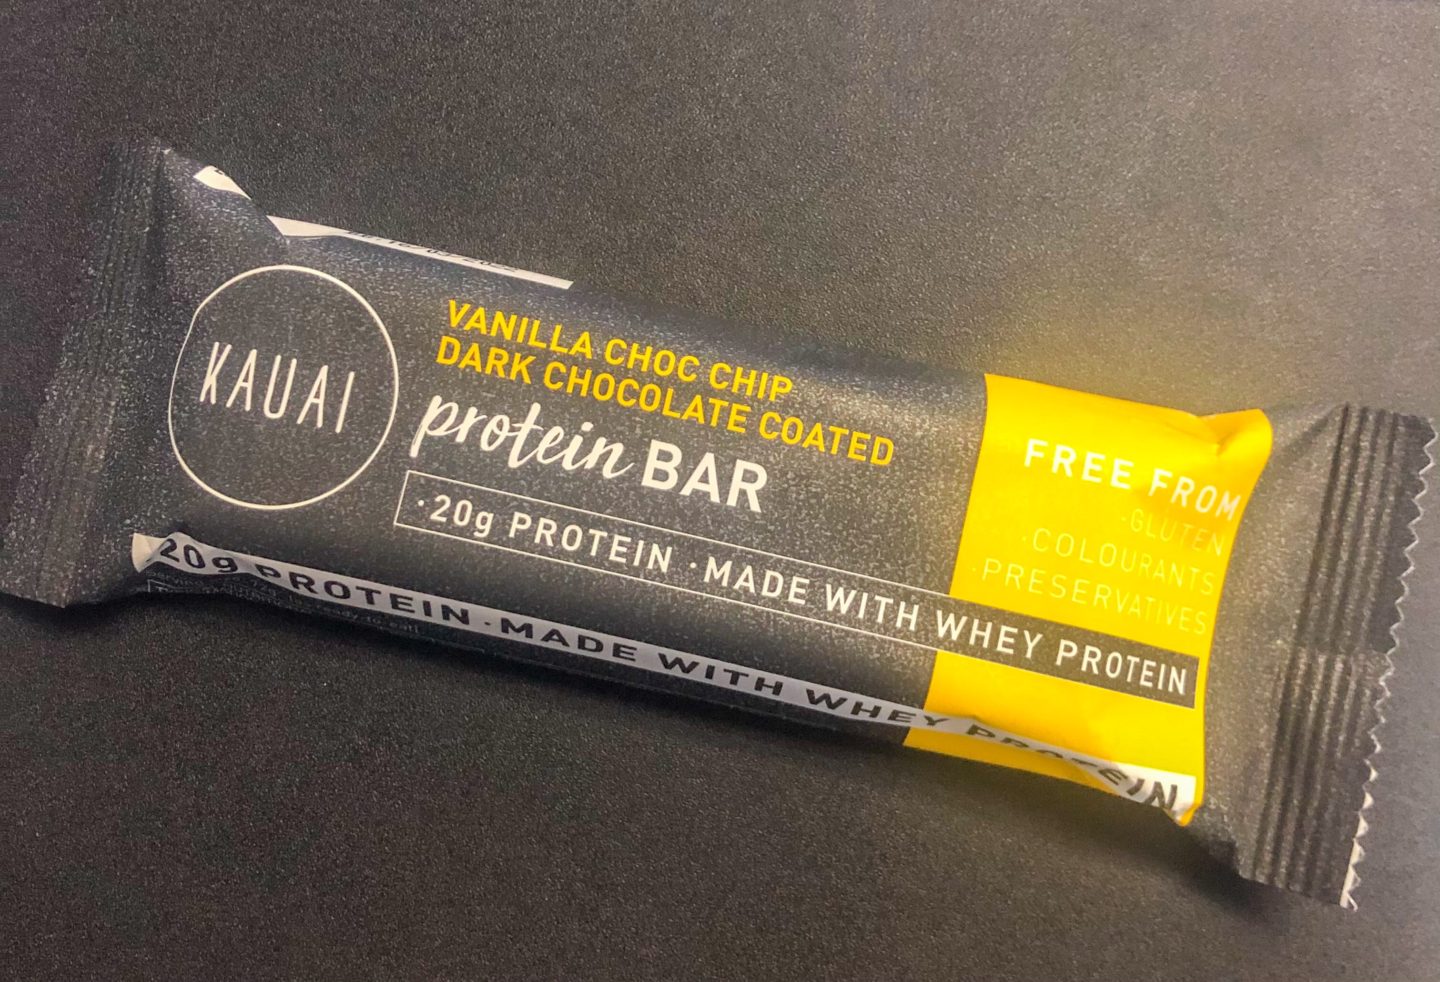 Kauai vanilla choc chip dark chocolate coated protein bar